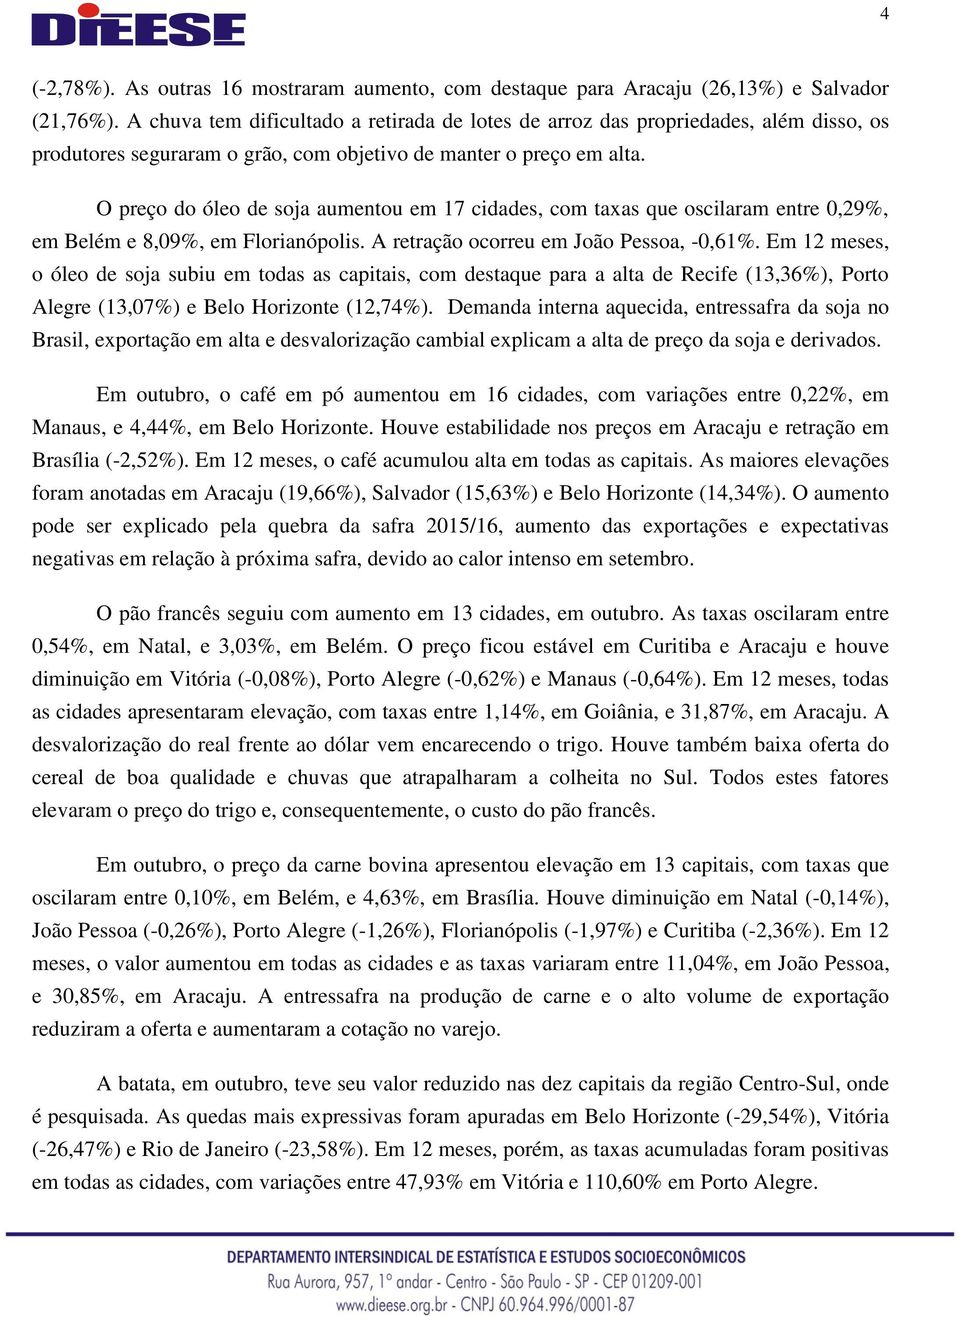 O preço do óleo de soja aumentou em 17 cidades, com taxas que oscilaram entre 0,29%, em Belém e 8,09%, em Florianópolis. A retração ocorreu em João Pessoa, -0,61%.